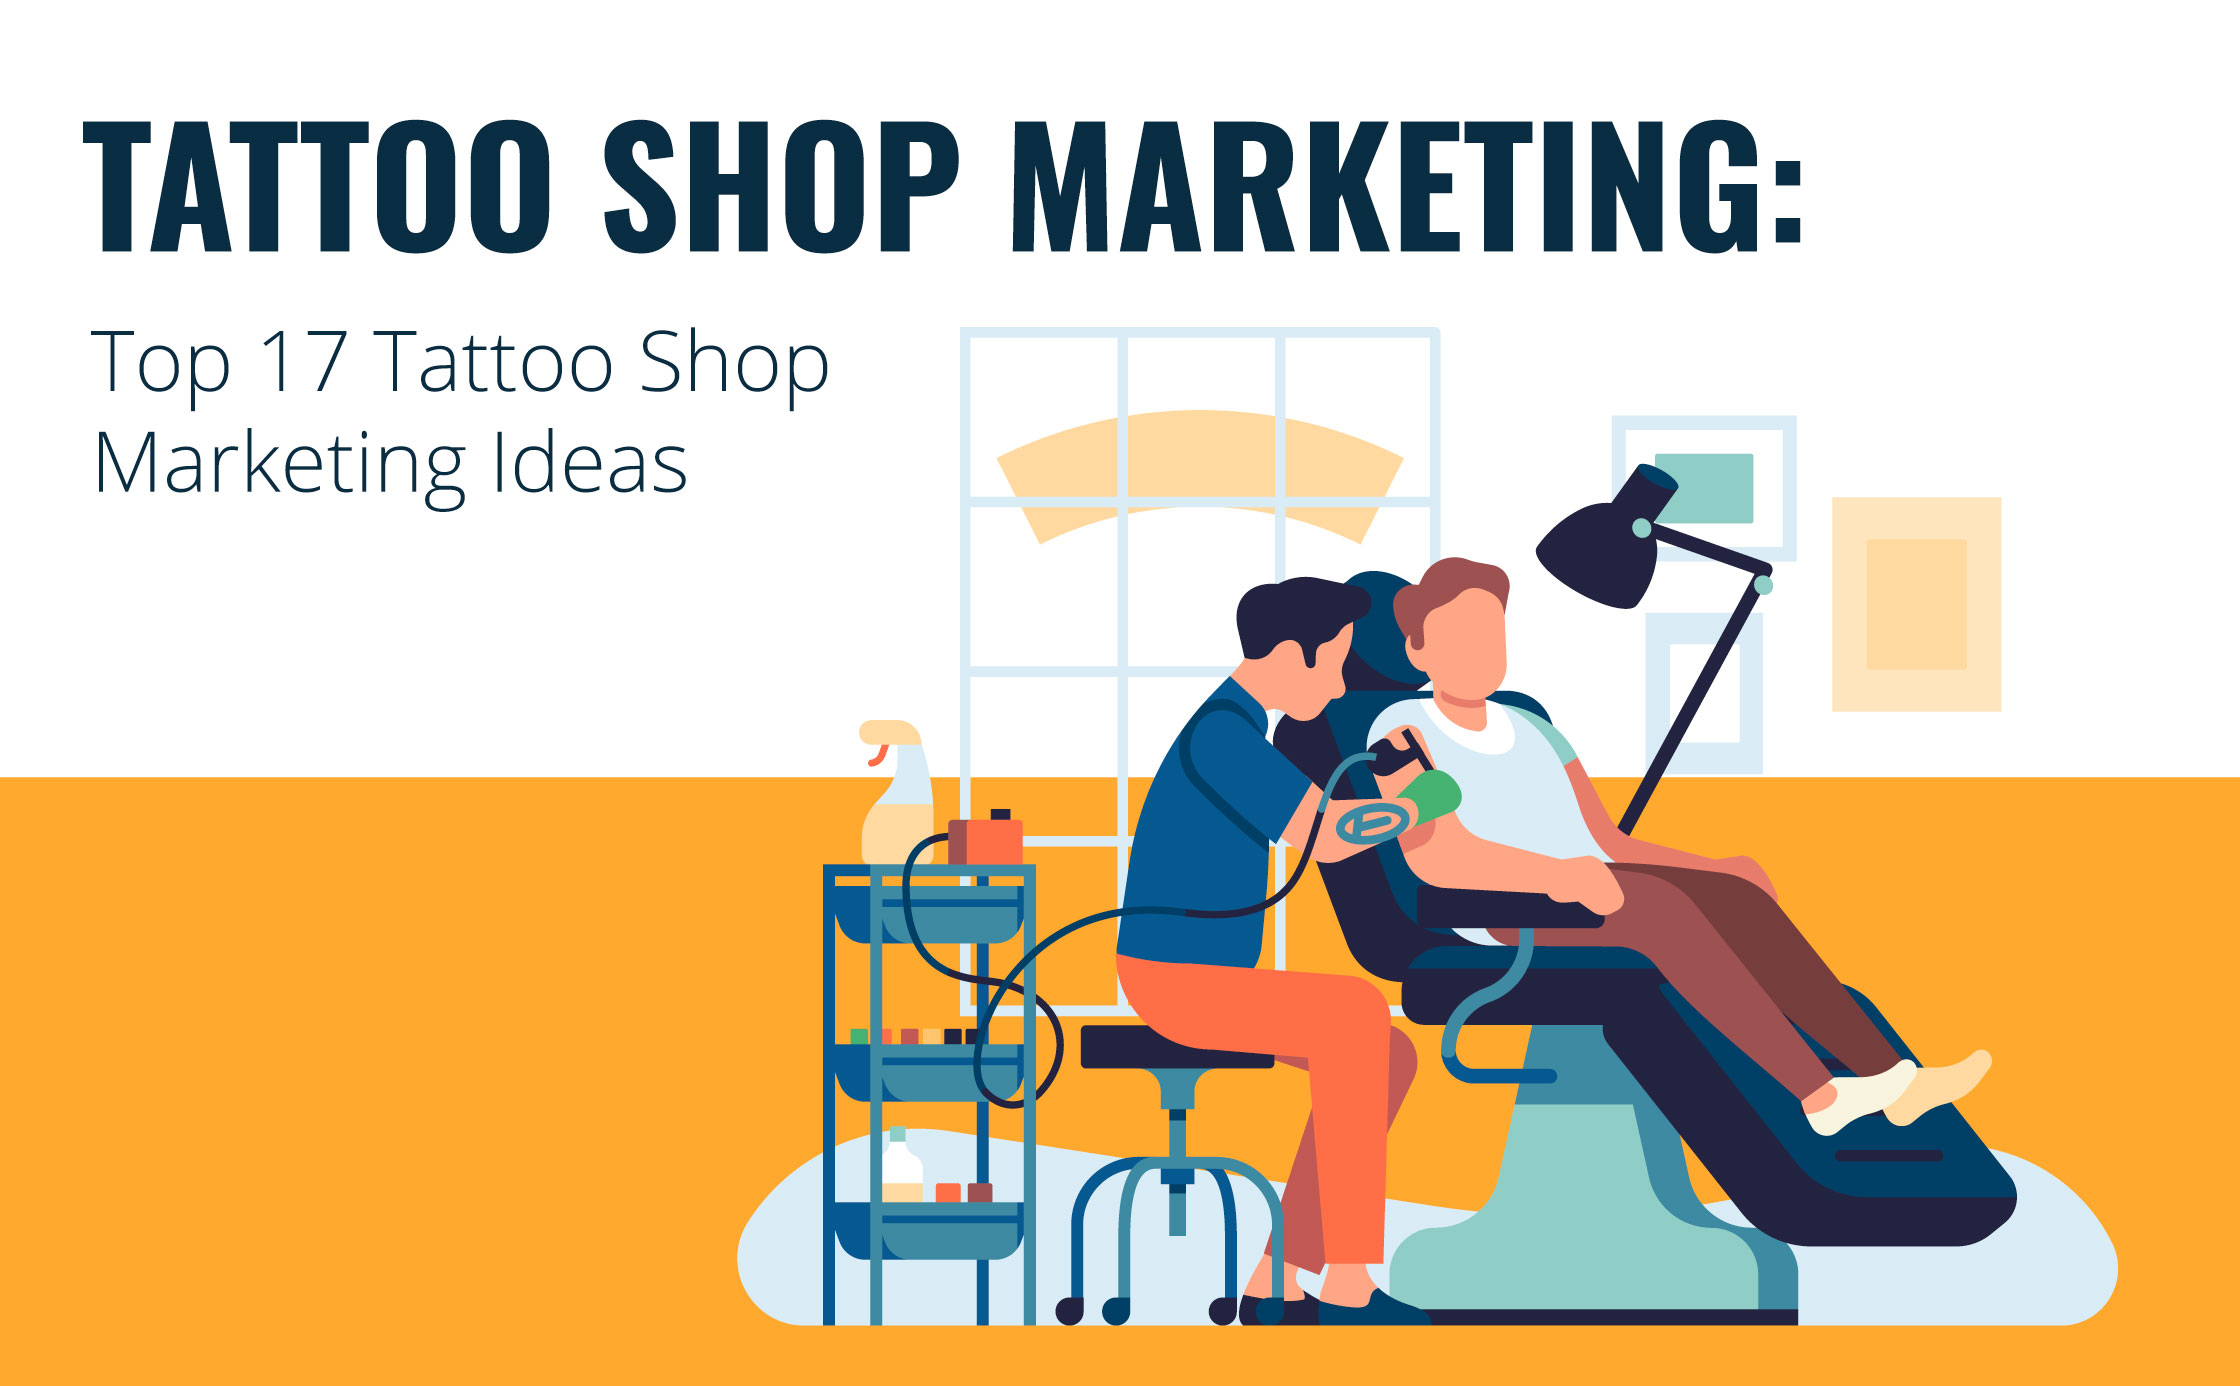 Tattoo marketing ideas